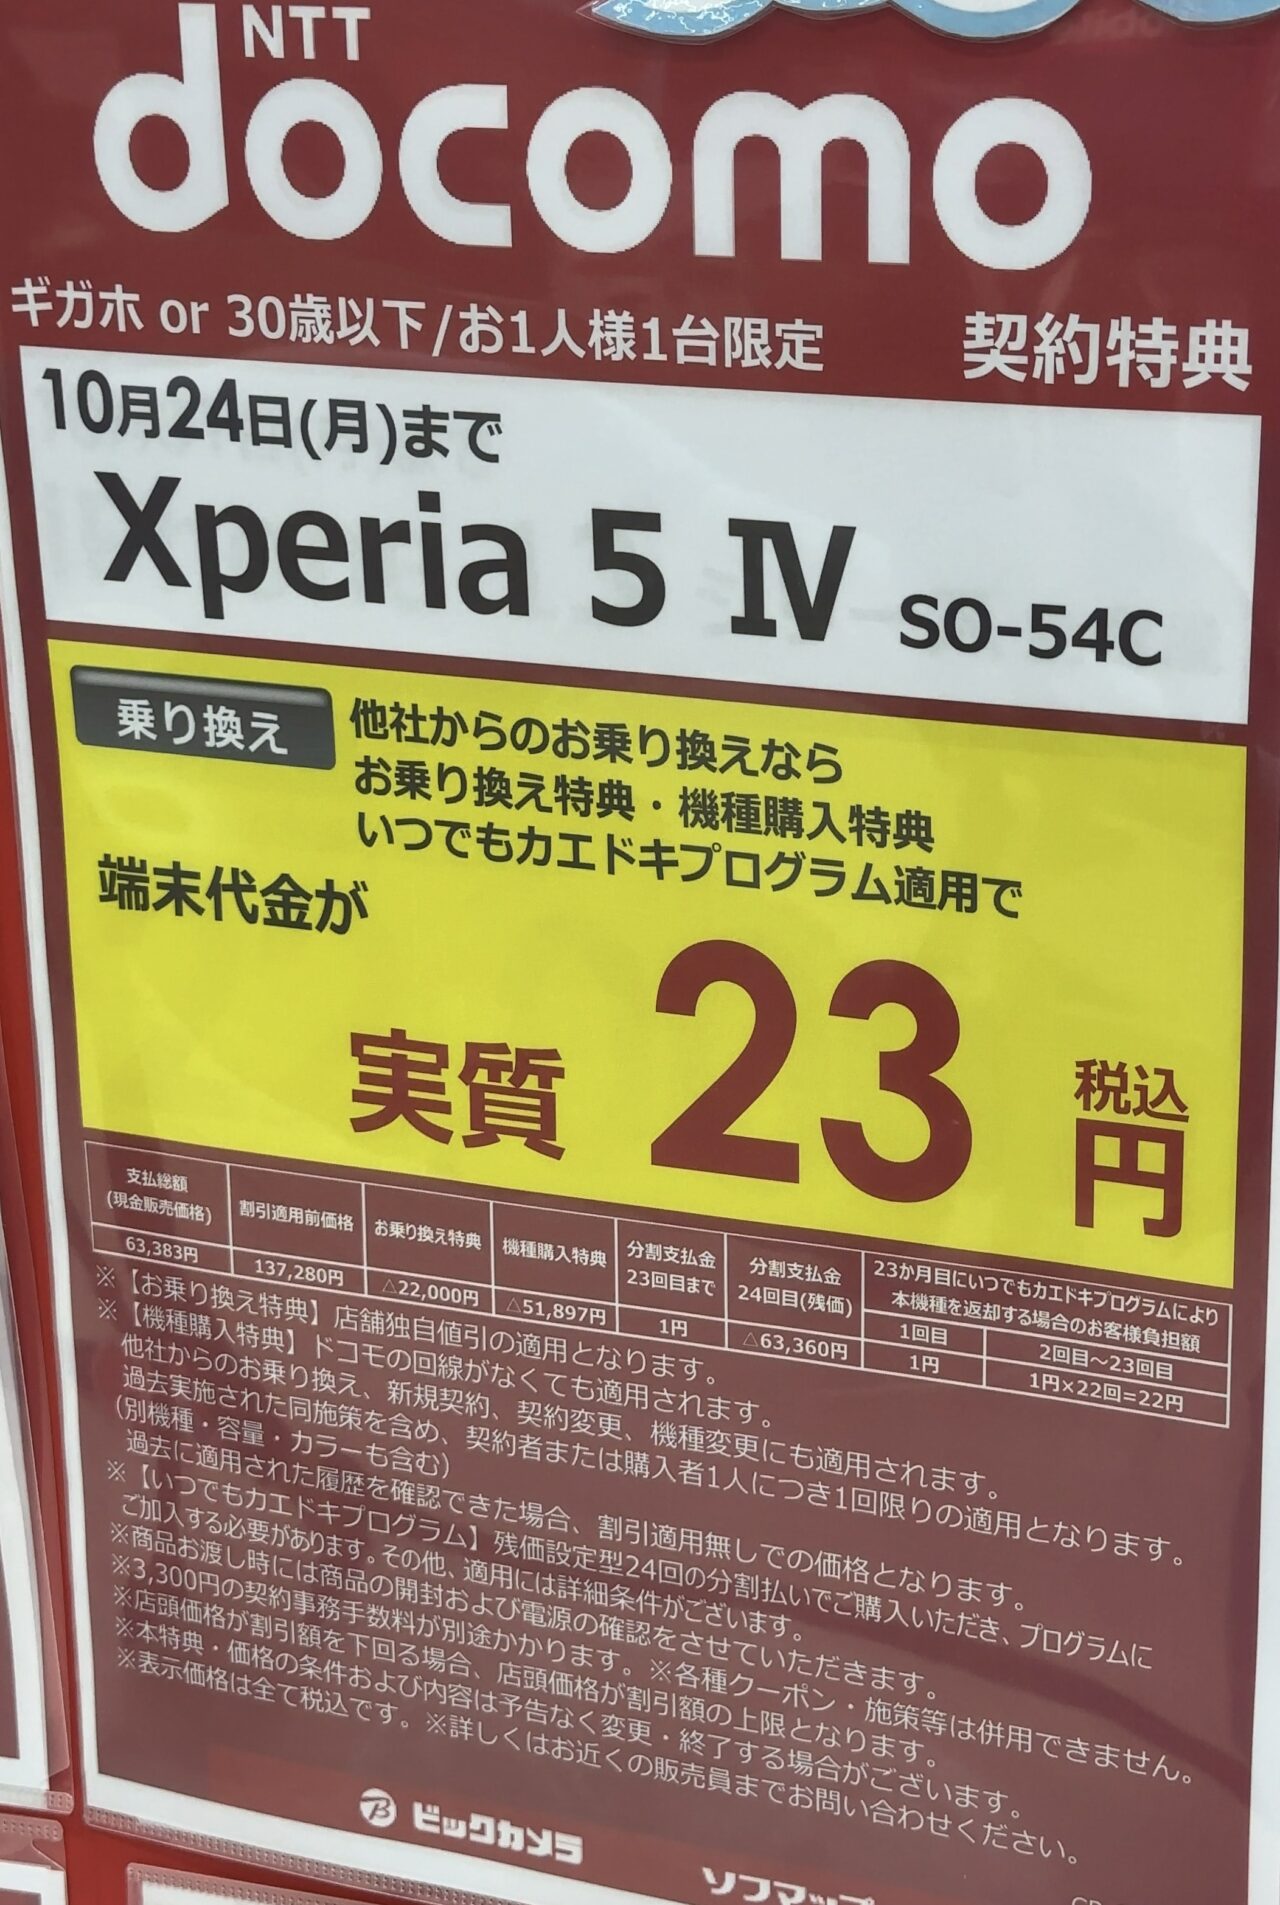 ビックカメラでも発売直後のドコモのXperia 5 ⅣがMNP(30歳以下/ギガホ